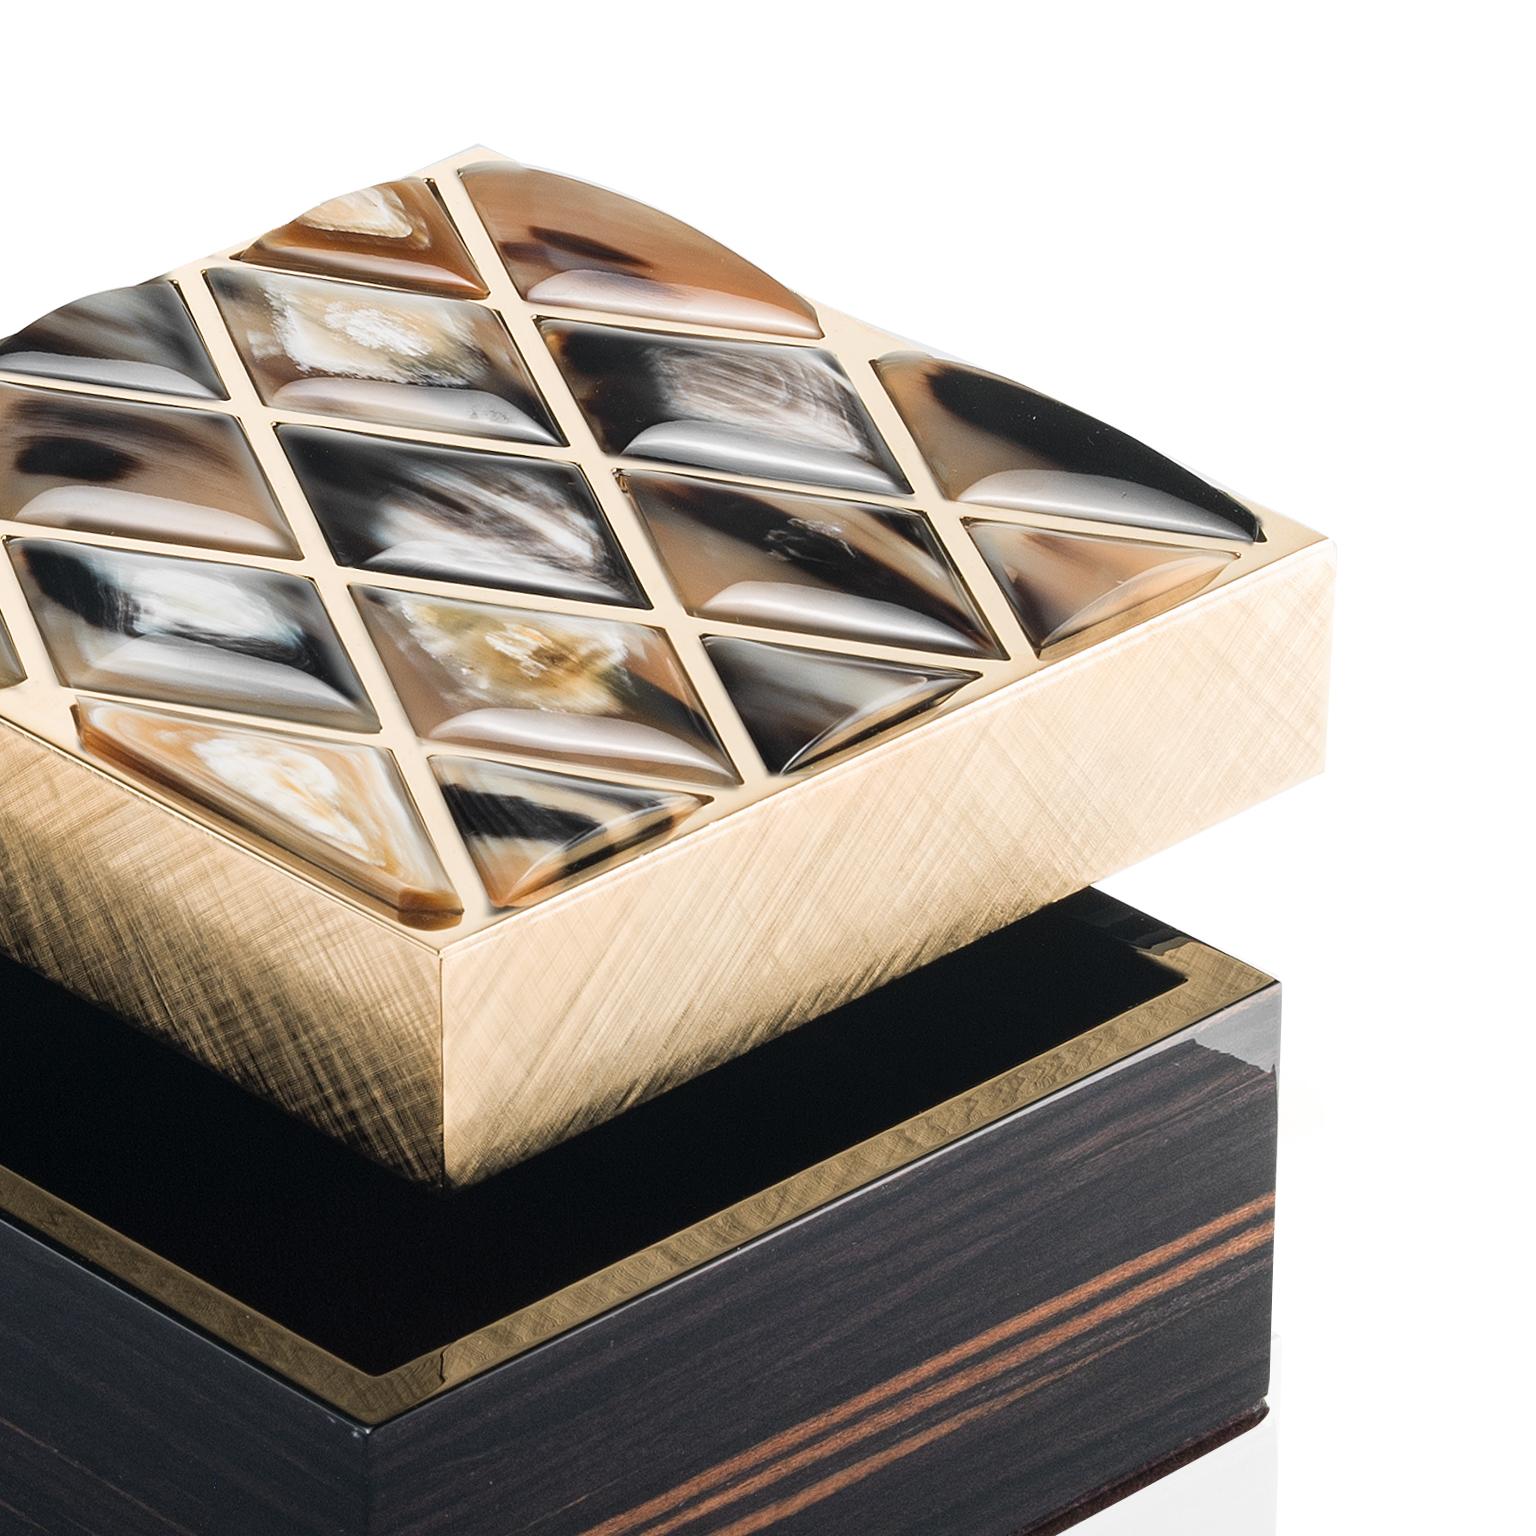 Unsere Fedora-Box wurde entwickelt, um Ihre wertvollsten Schmuckstücke geordnet und sicher aufzubewahren. Sie ist das perfekte Zuhause für alle Ihre Schätze und Andenken. Die aus glänzendem Ebenholz gefertigte Schatulle zeichnet sich durch einen